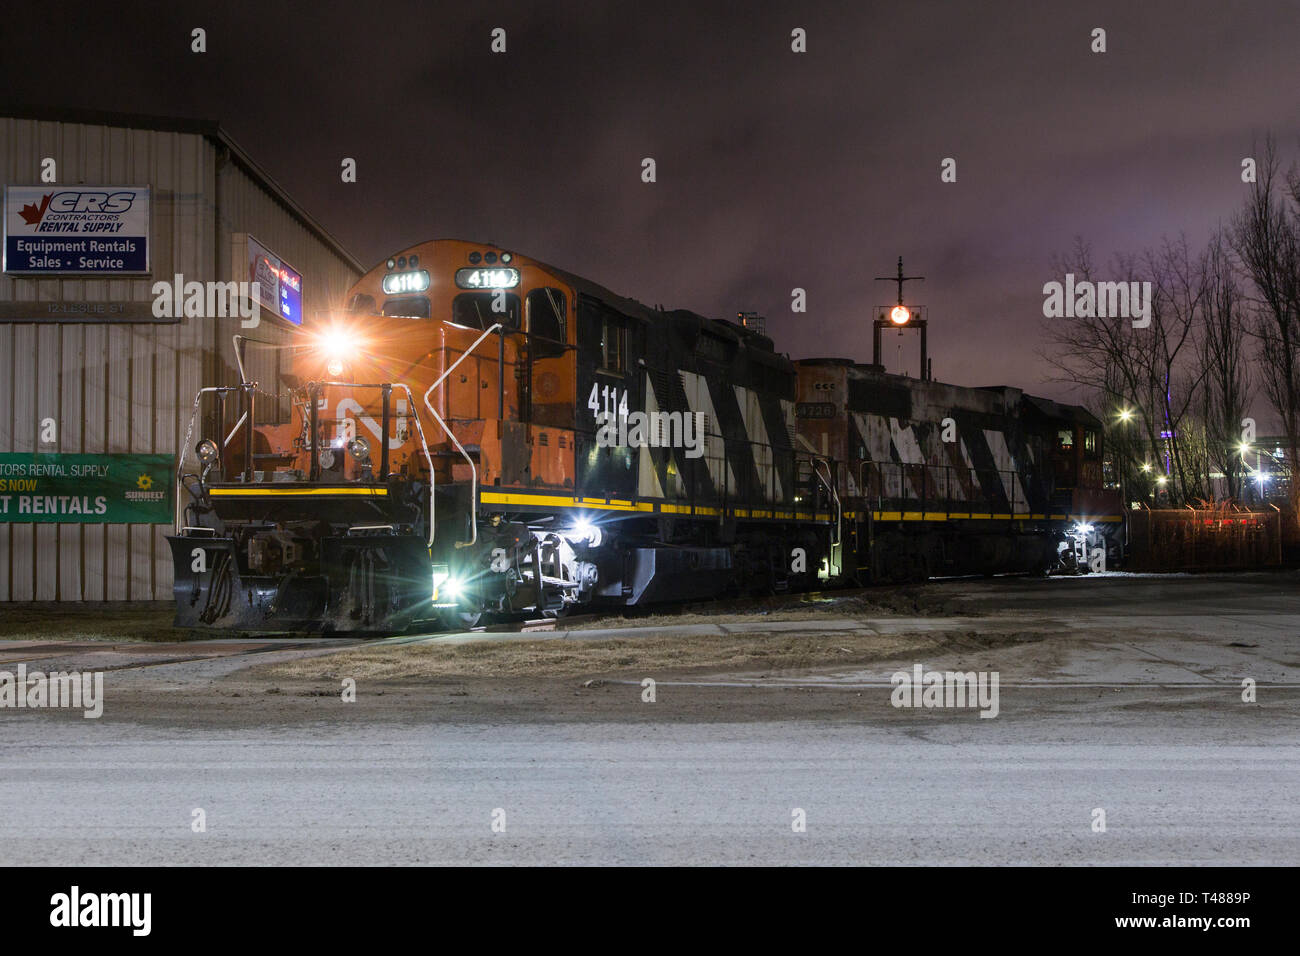 Train de marchandises du Canadien national rail locomotive centre-ville de Portland de l'Ontario Toronto Lakeshore ville industrielle au bord de l'environnement urbain Banque D'Images